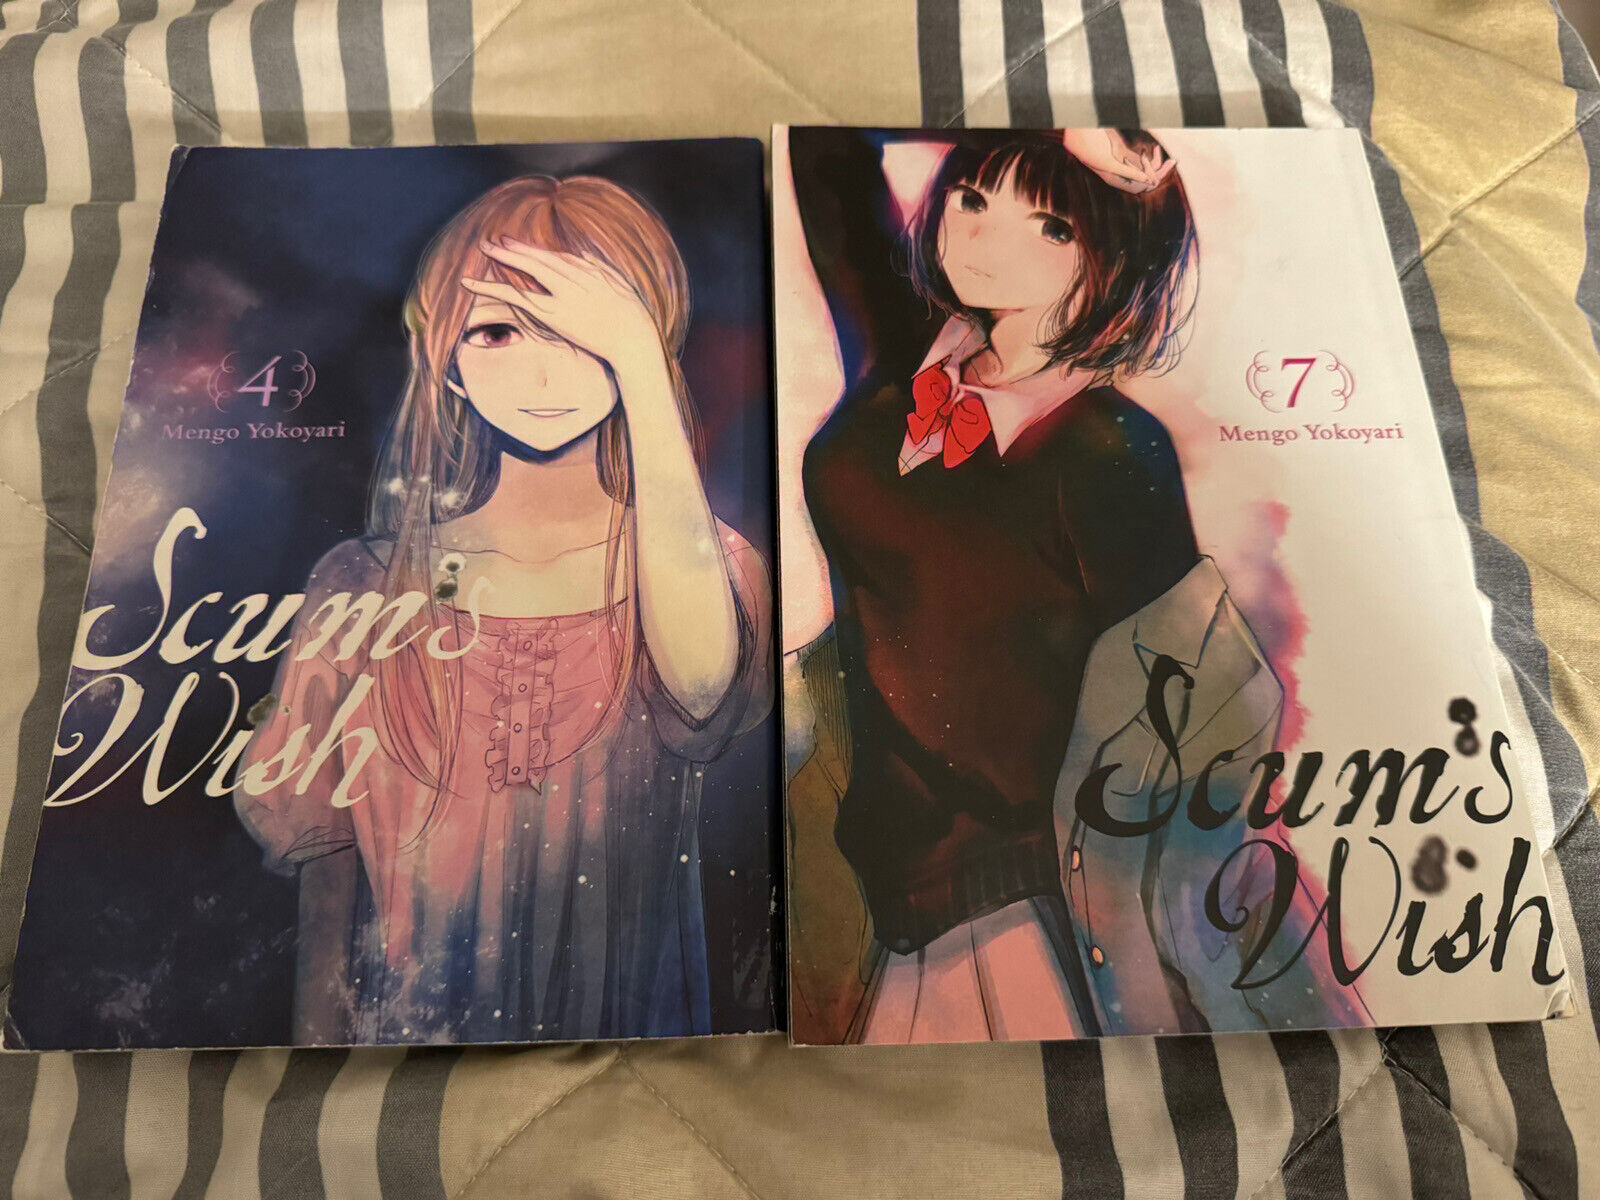 Scum's Wish Vol 4 & 7 (Manga Mengo Yokoyari) Yen Press Volume Series Book